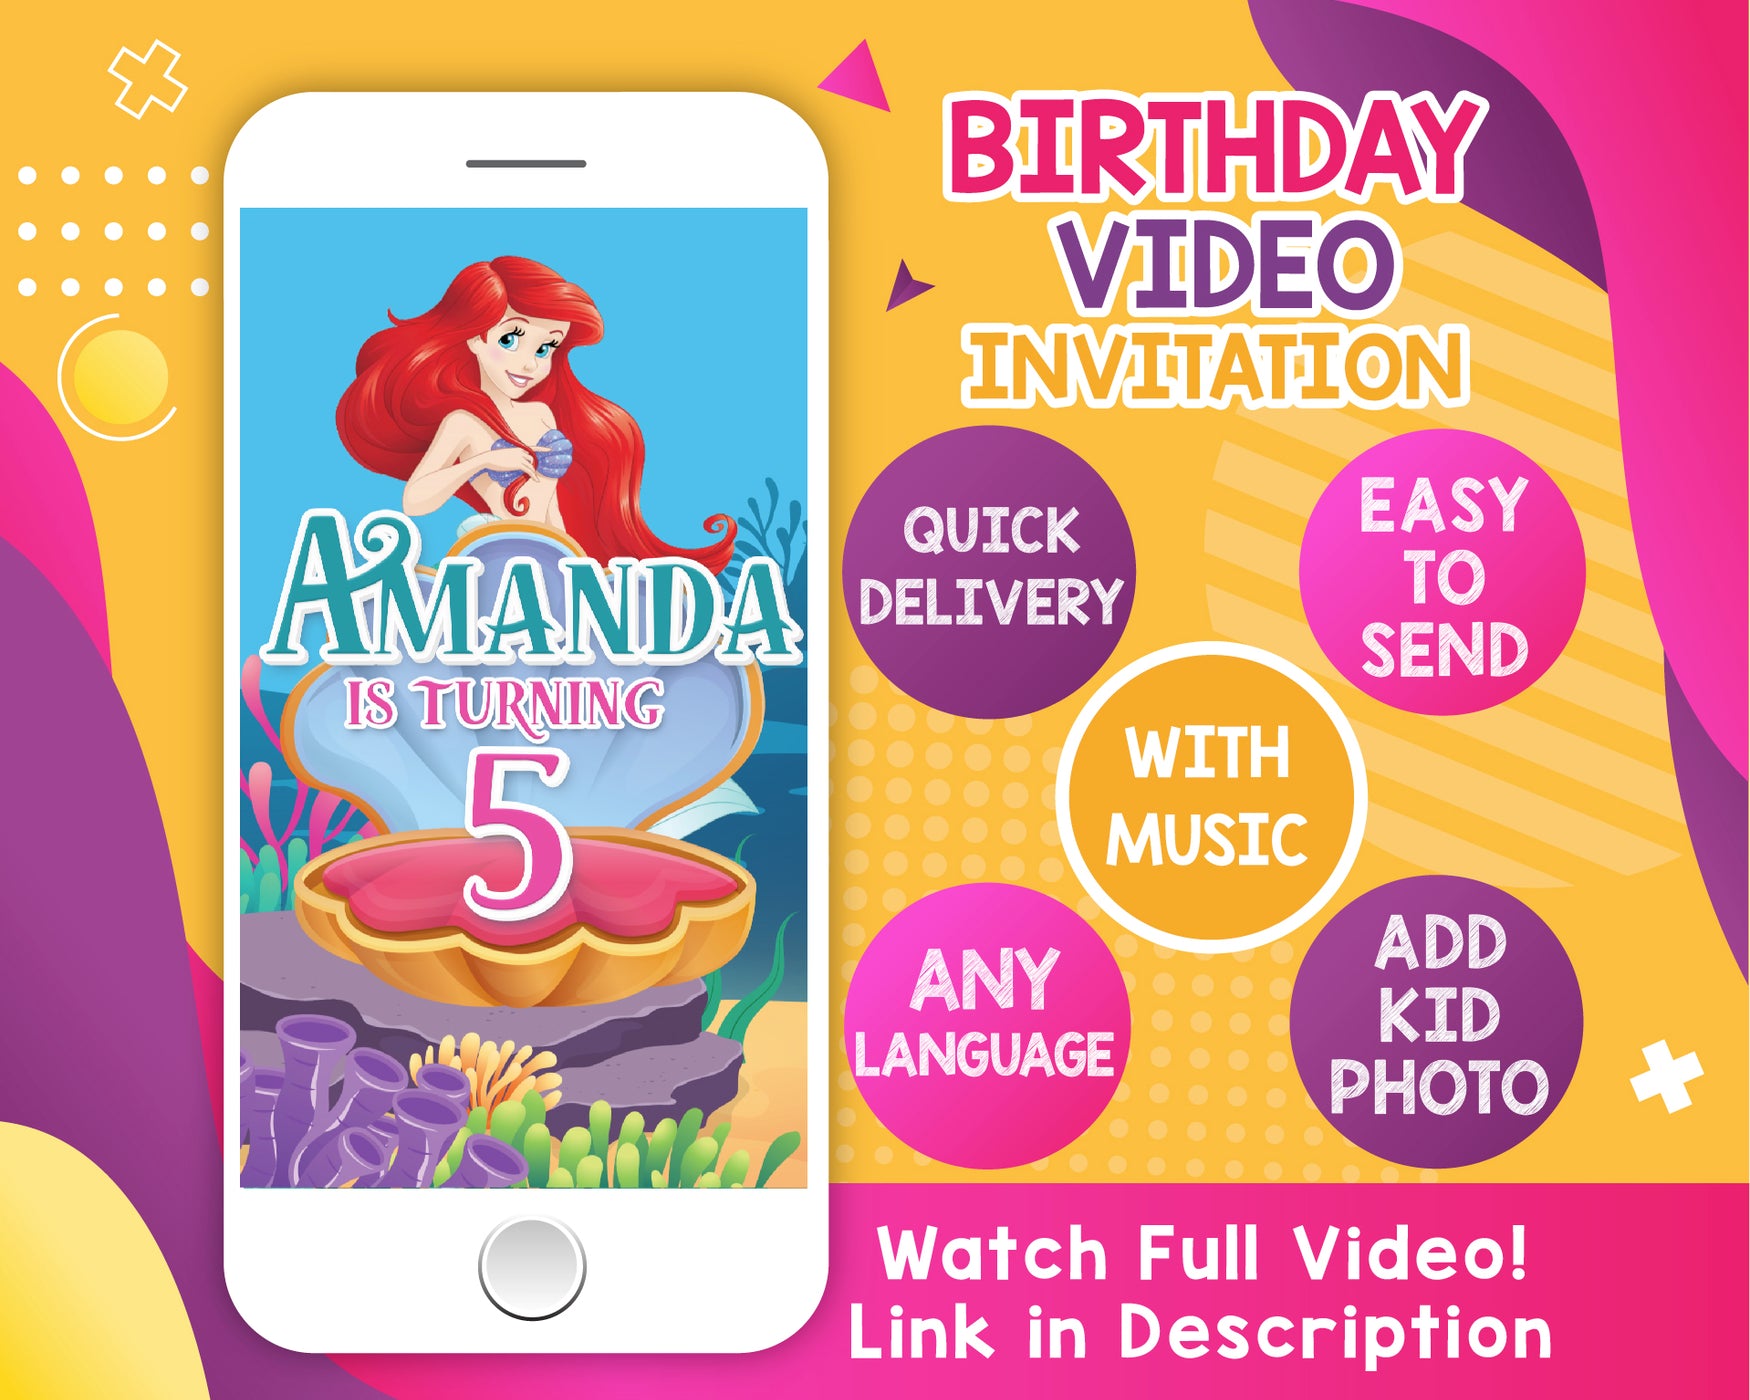 Little Mermaid Birthday Video Invitation - Little Mermaid Animated Invitation